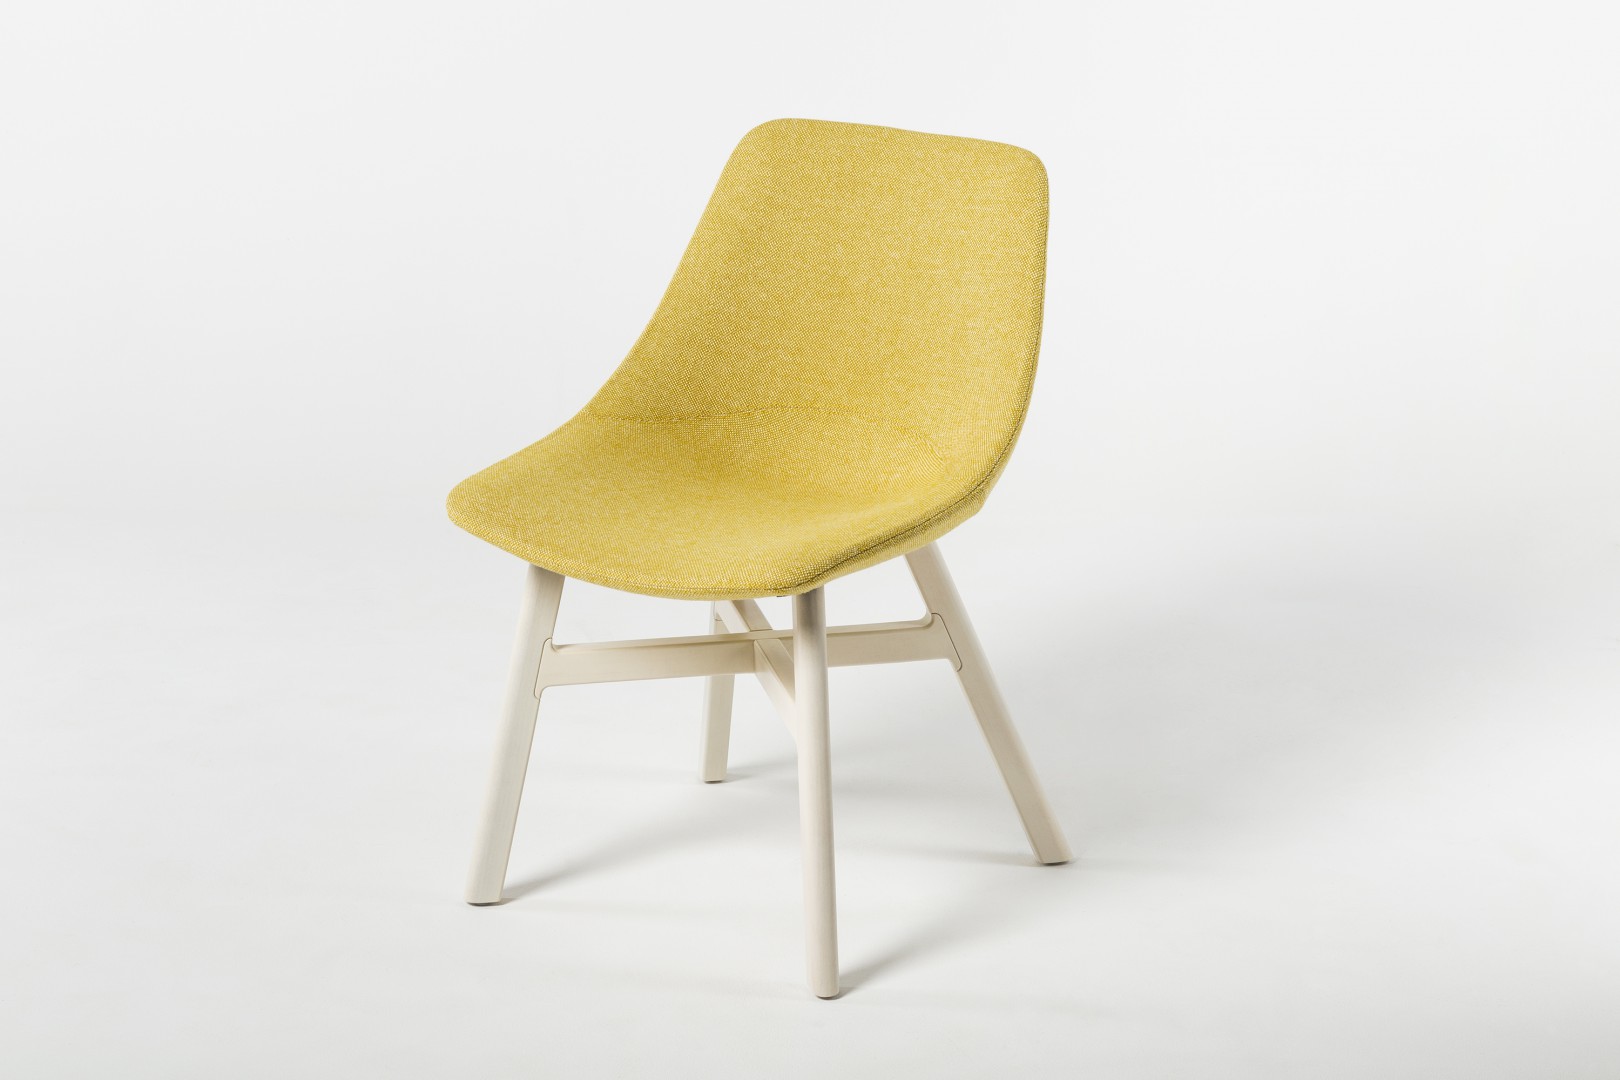 Nowe krzesło z kolekcji Mishell (Noti) na drewnianych nogach. Fot. Noti